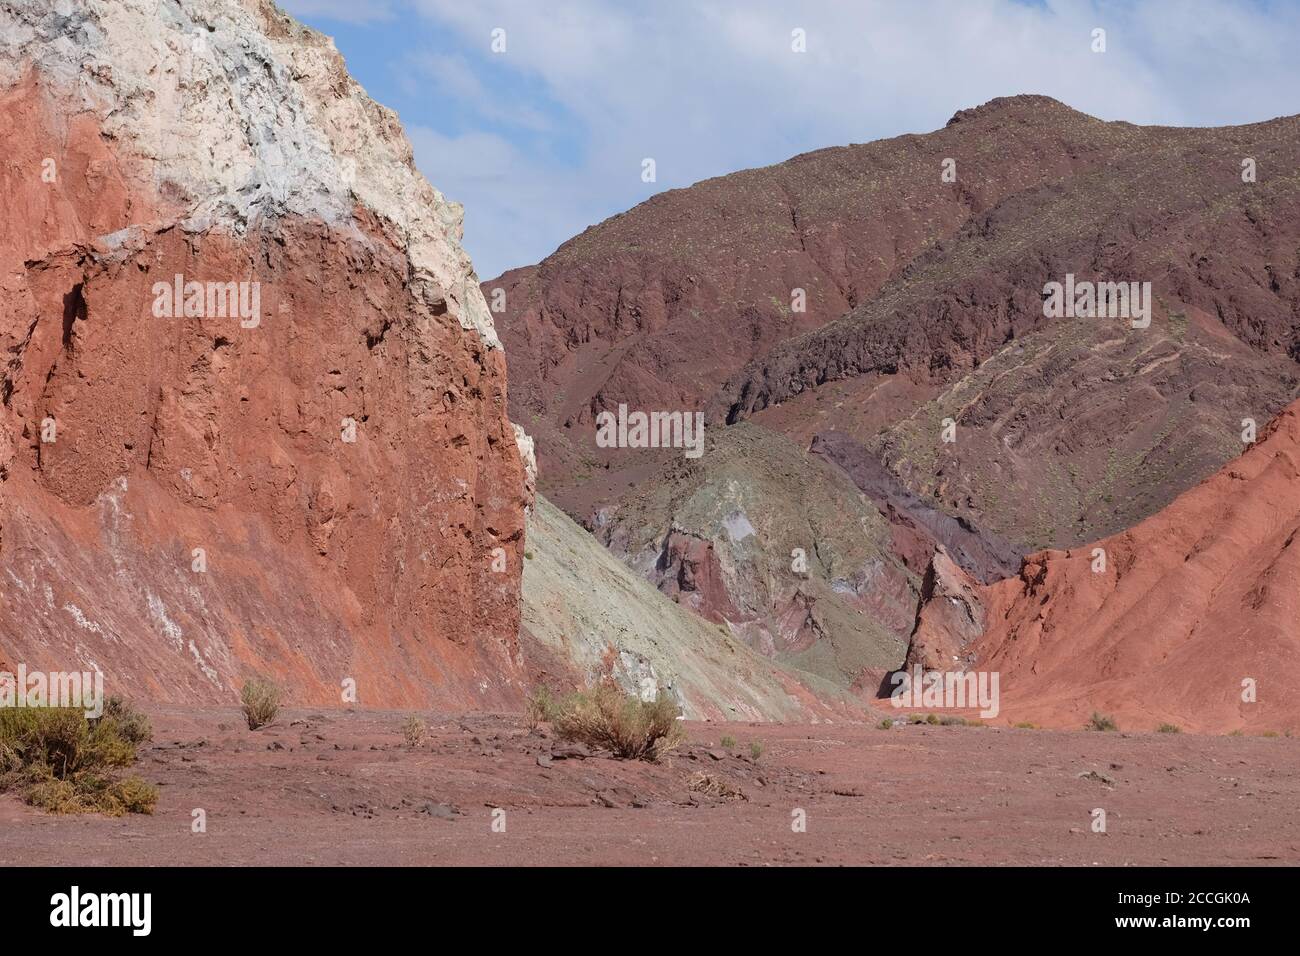 Valle del Arcoiris - Rainbow Valley - haut dans le désert d'Atacama a une palette de roches délicieusement colorées. Banque D'Images